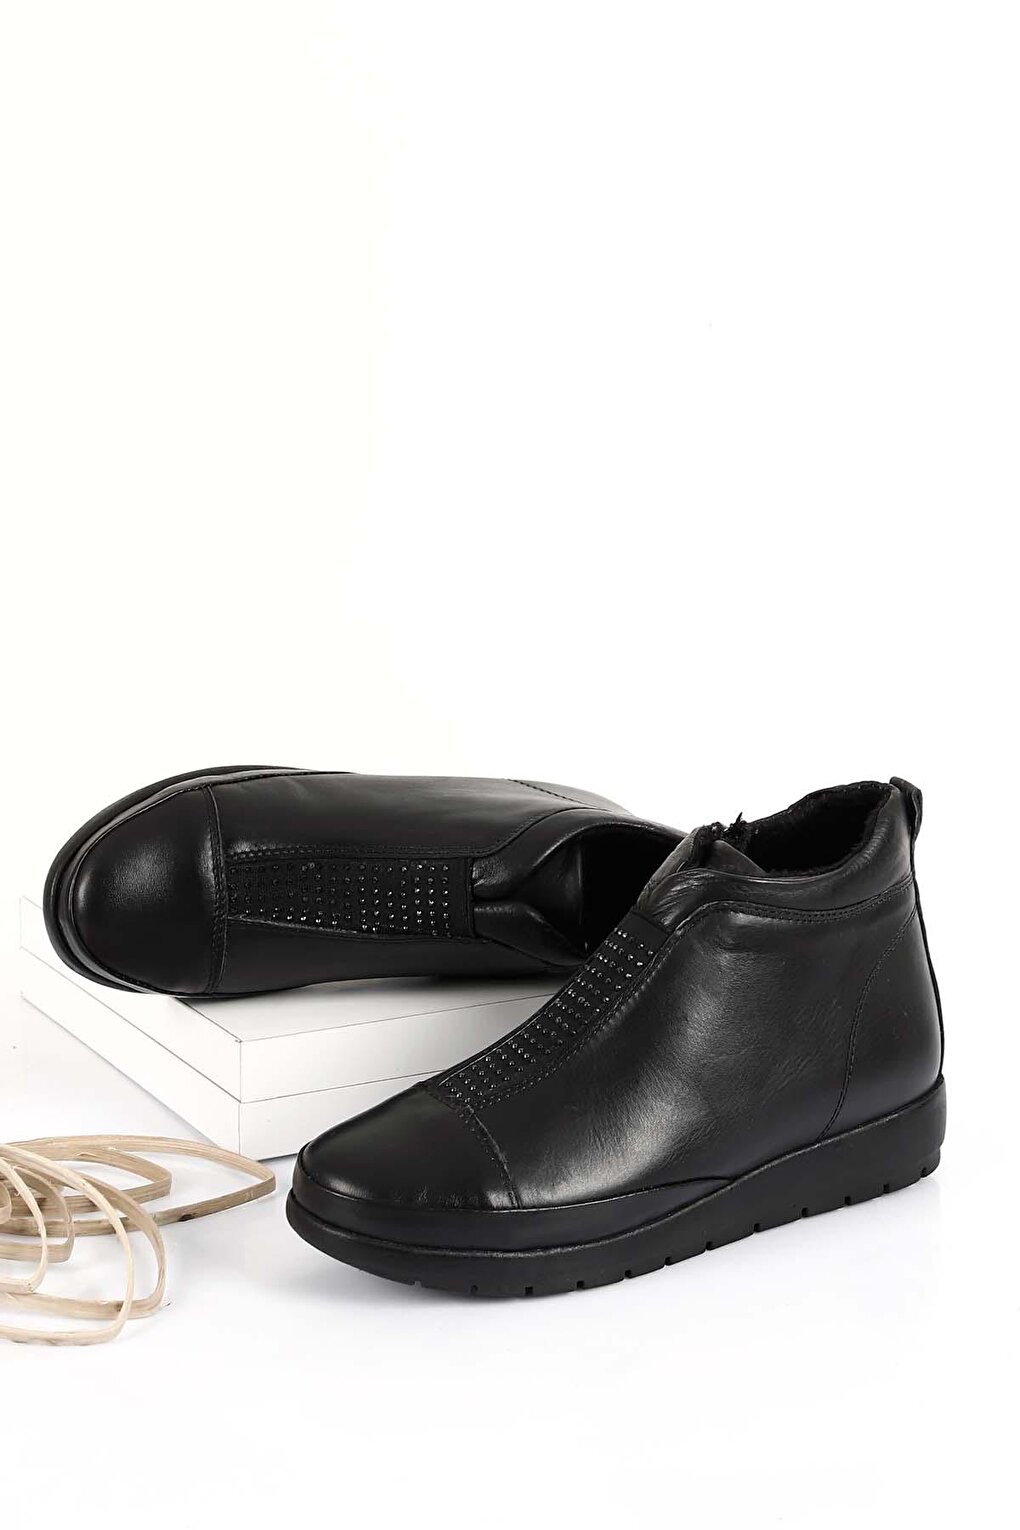 Женские ботинки из натуральной кожи с круглым носком на молнии 77010 GÖNDERİ(R) женские ботинки из натуральной кожи с круглым носком на молнии 77010 gönderi r